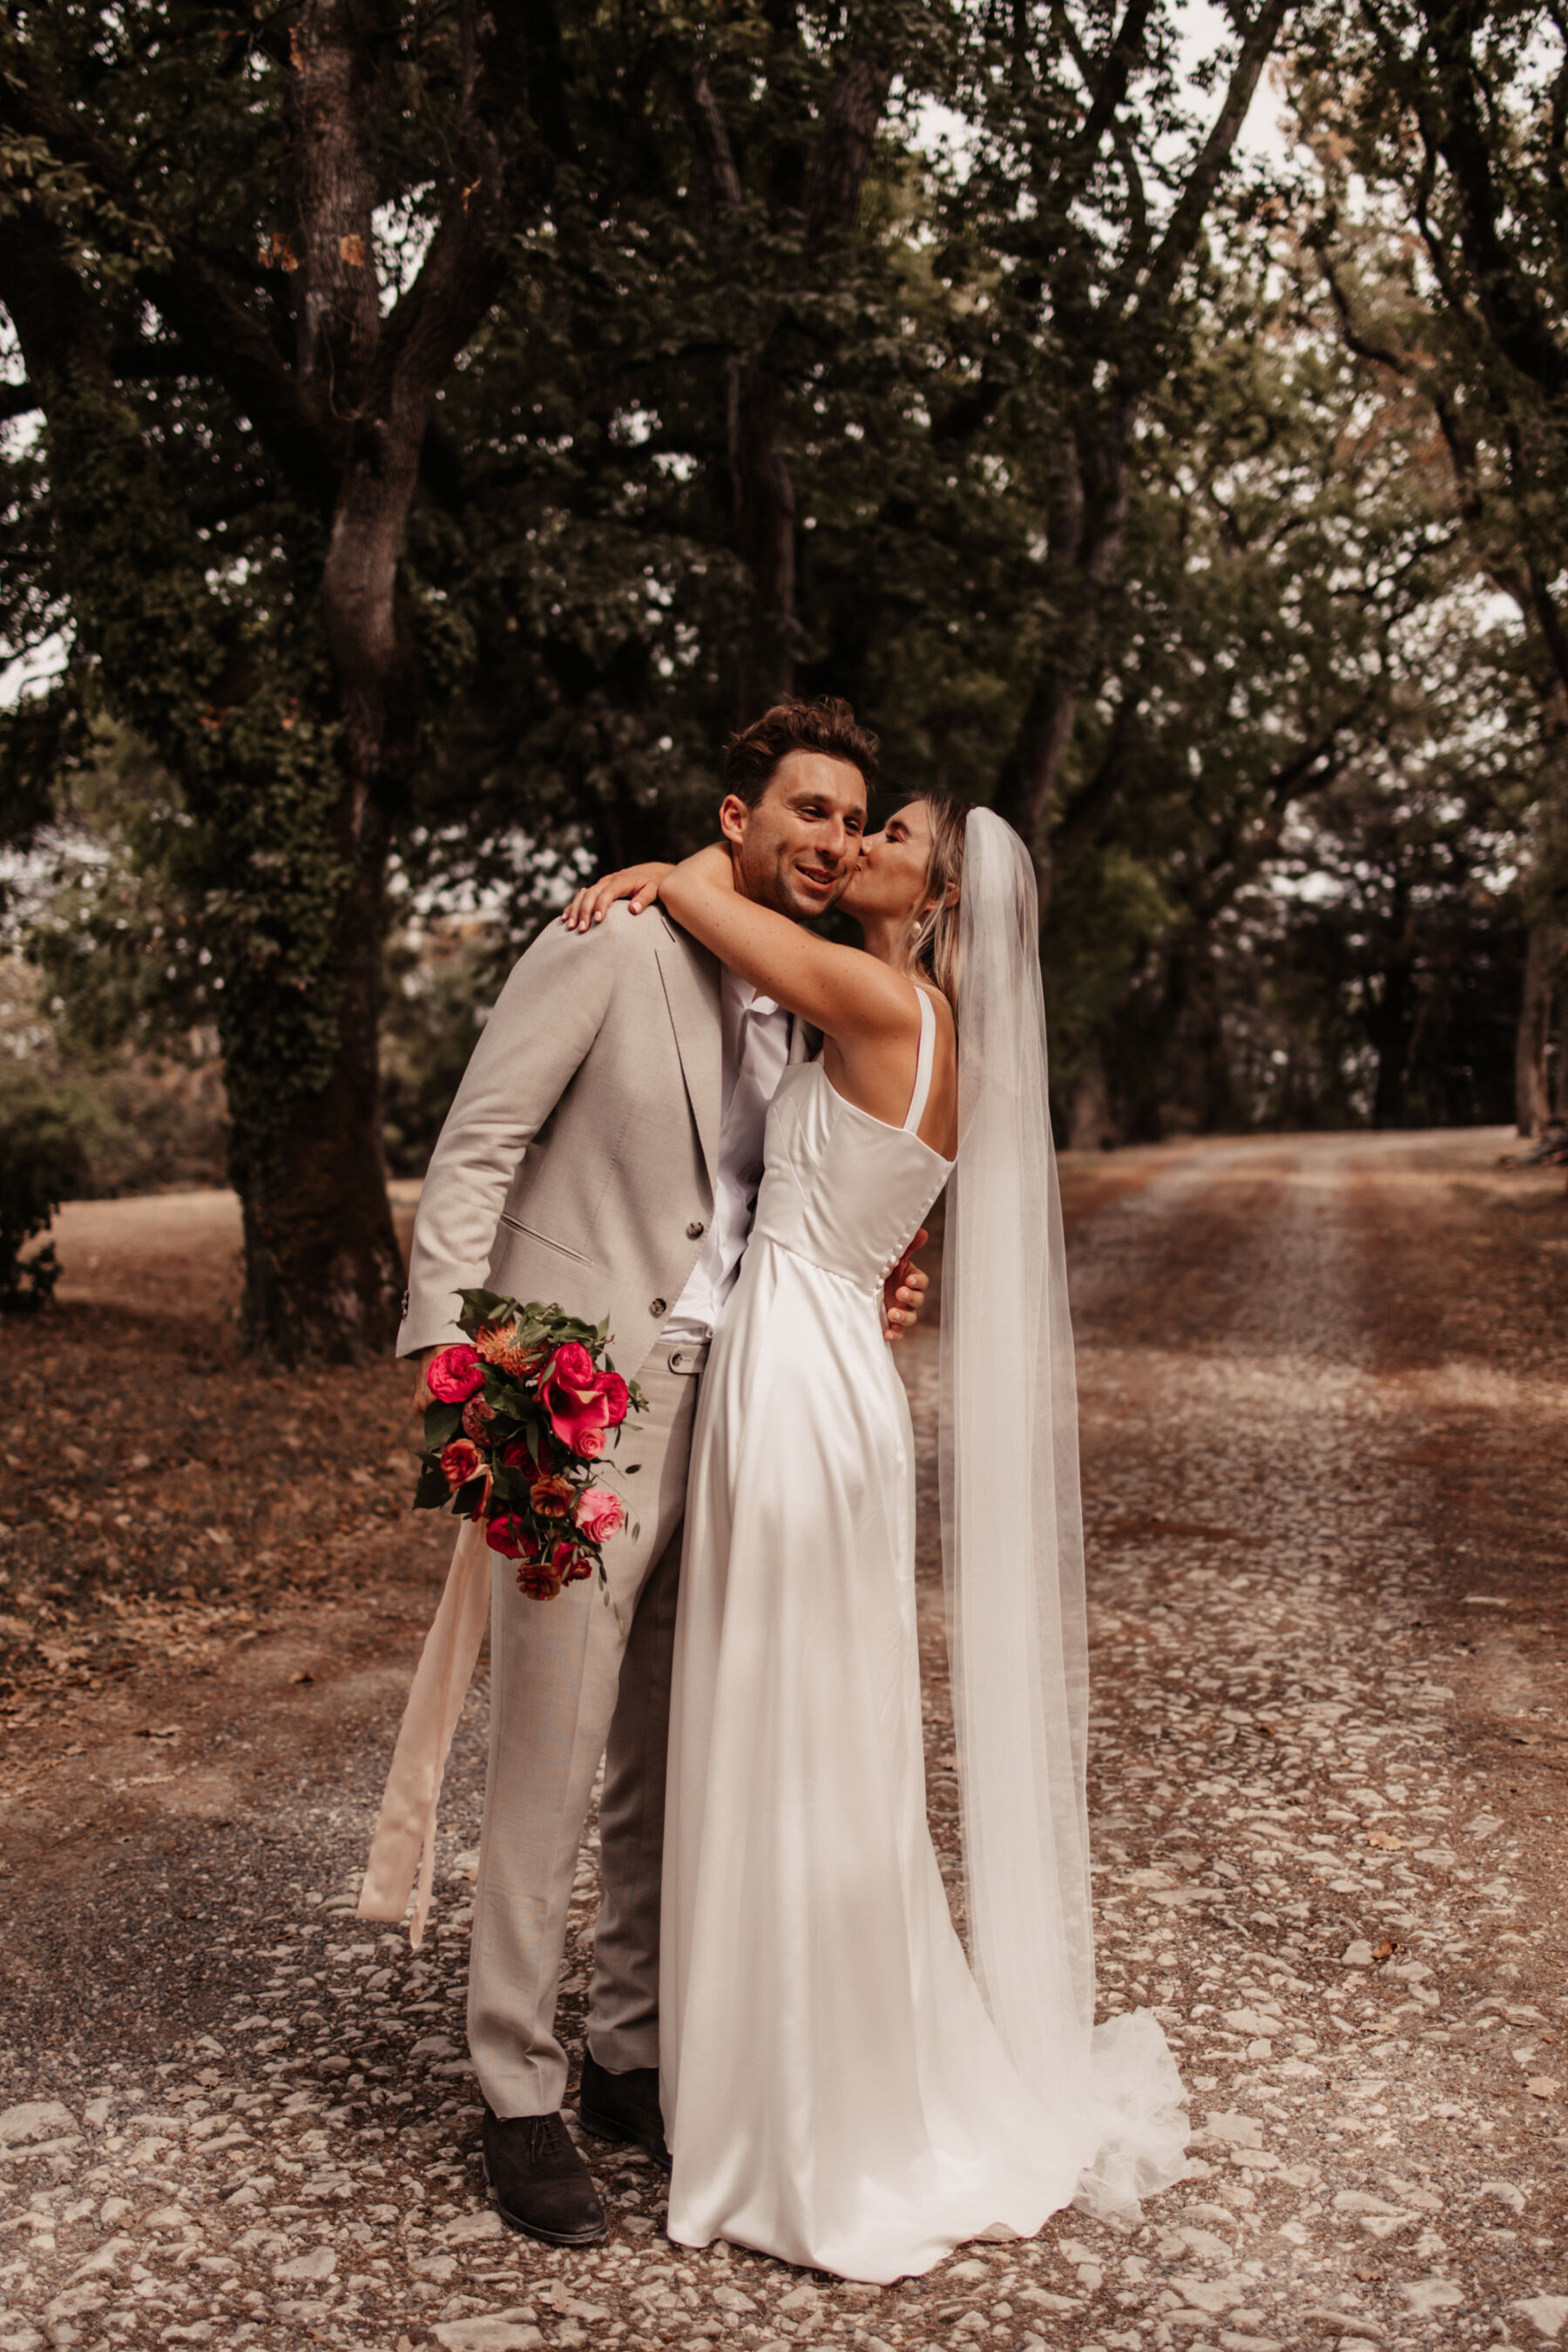 Modern minimalist wedding dress by Andrea Hawkes Bridal.